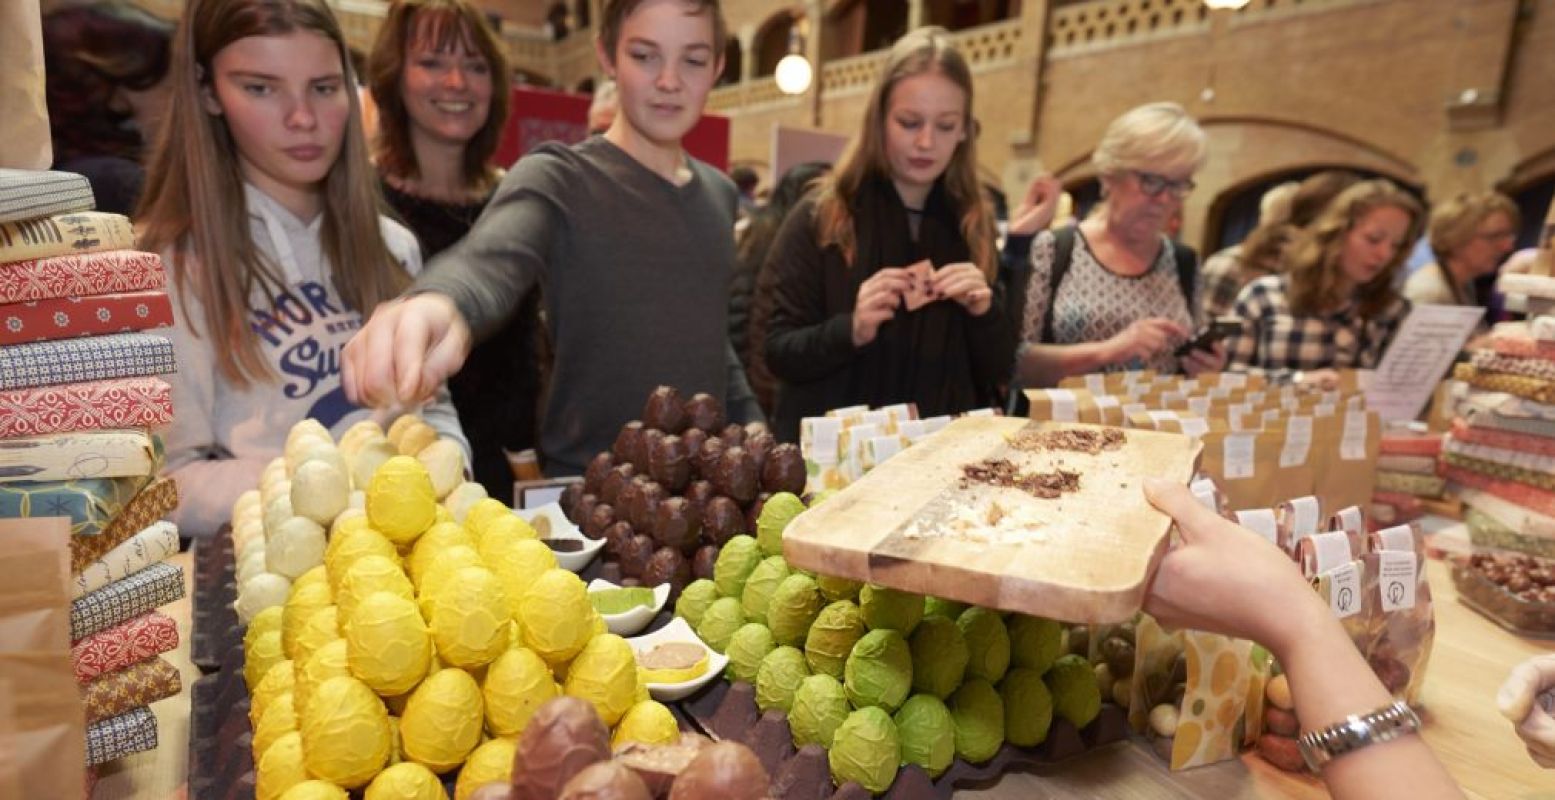 Verschillende chocolademakers bieden hun koopwaar aan. Foto: Chocoa Festival